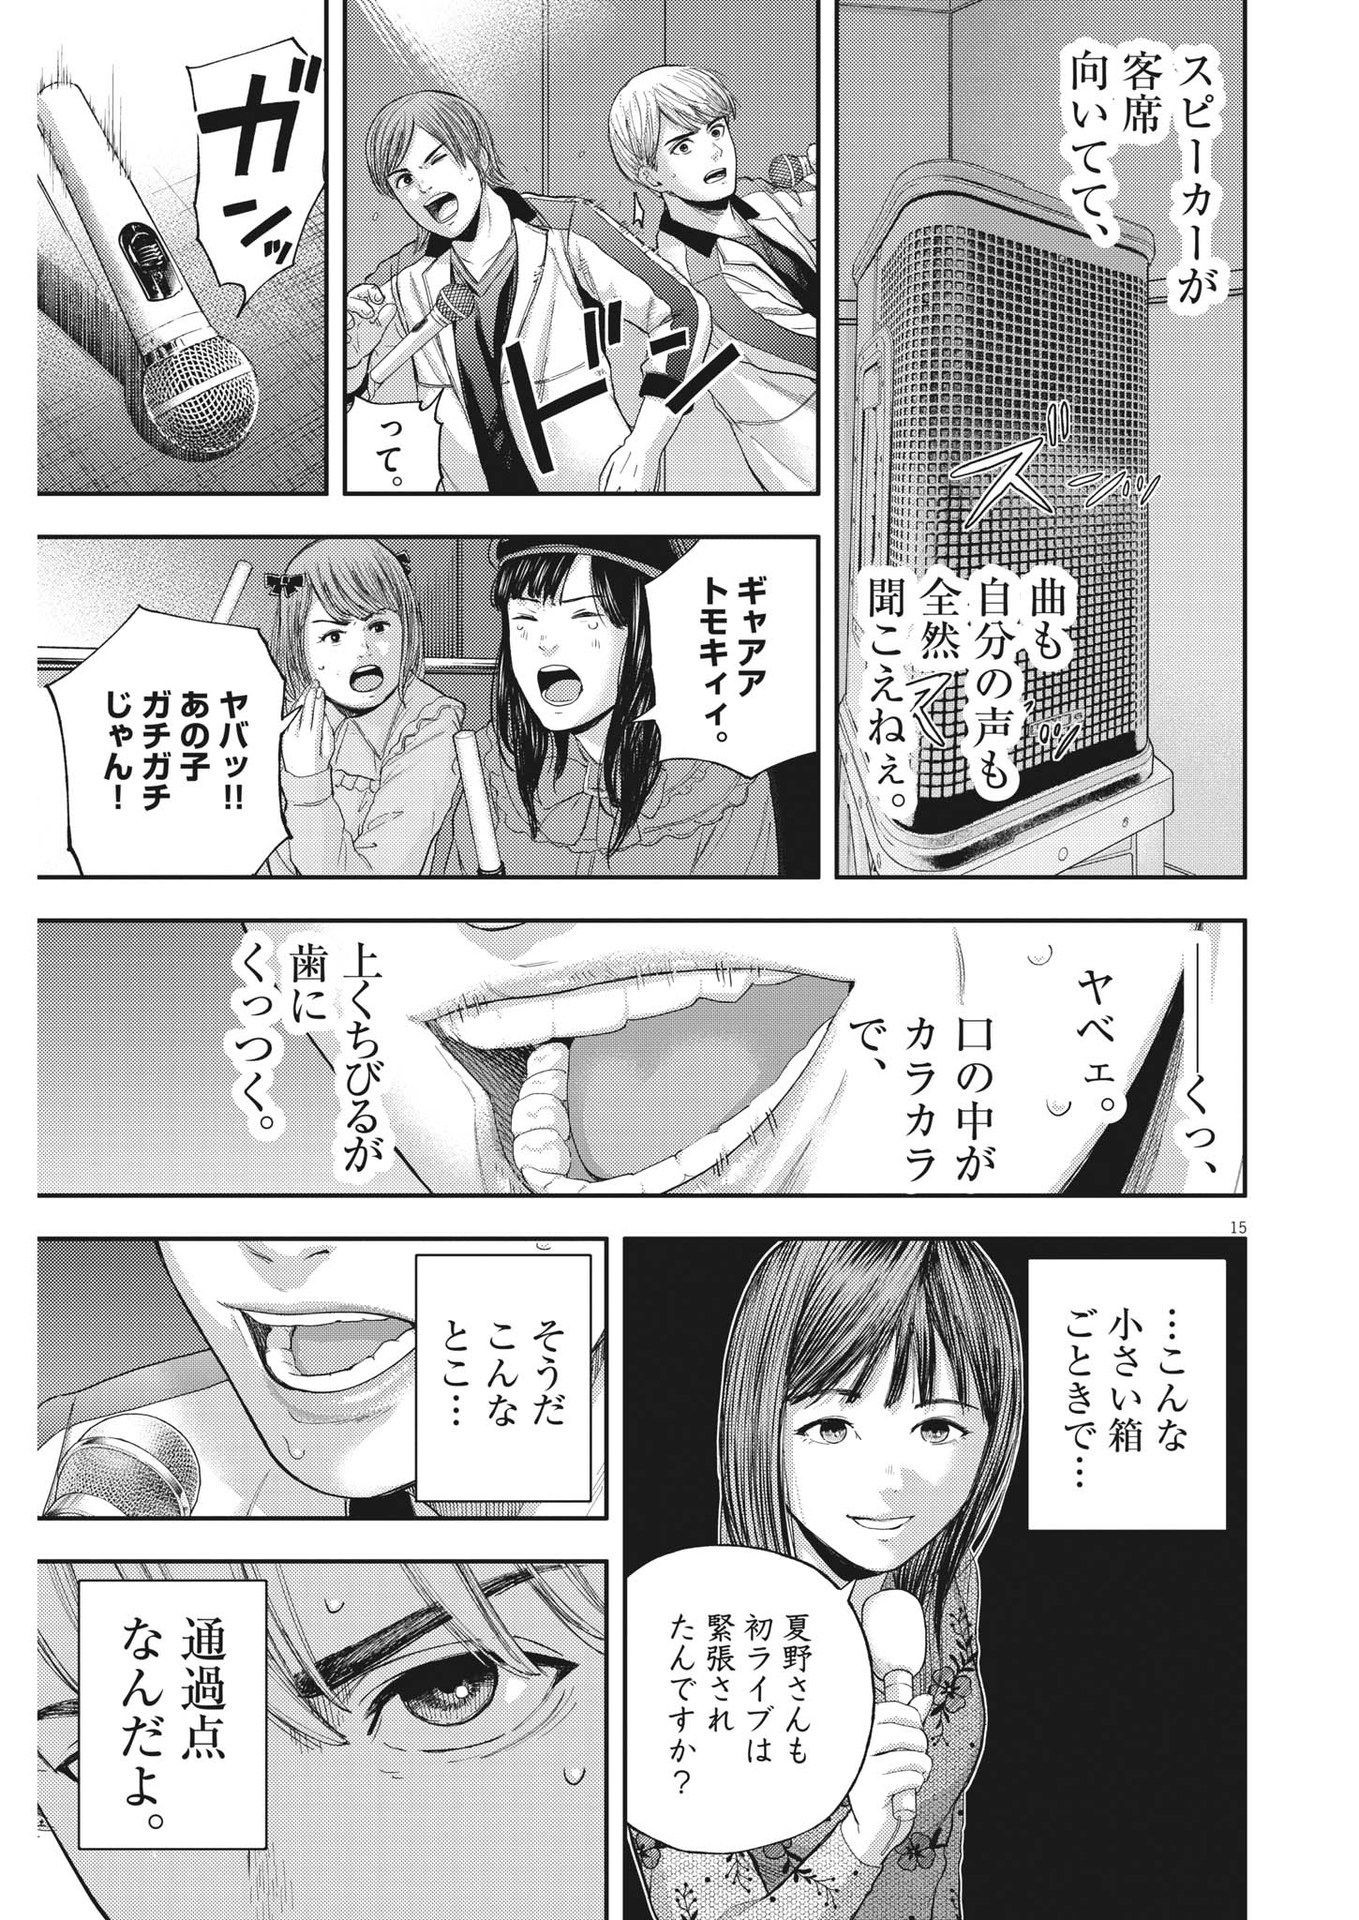 Yumenashi-sensei no Shinroshidou - Chapter 8 - Page 15